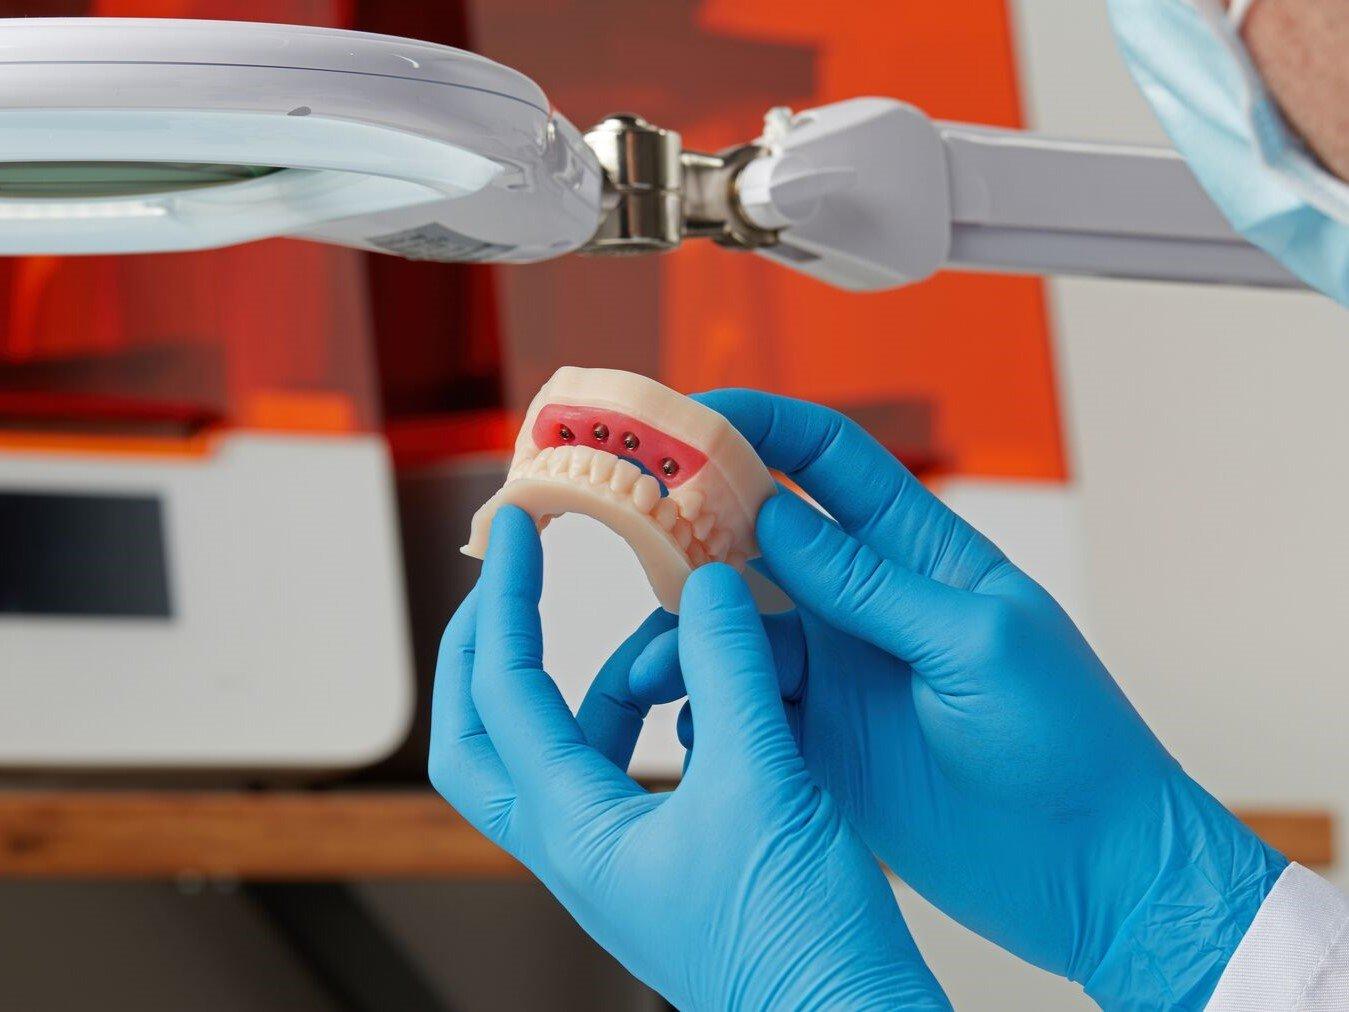 Zahnarzt bei der Arbeit mit einem 3D-gedruckten Modell aus Model Resin V3